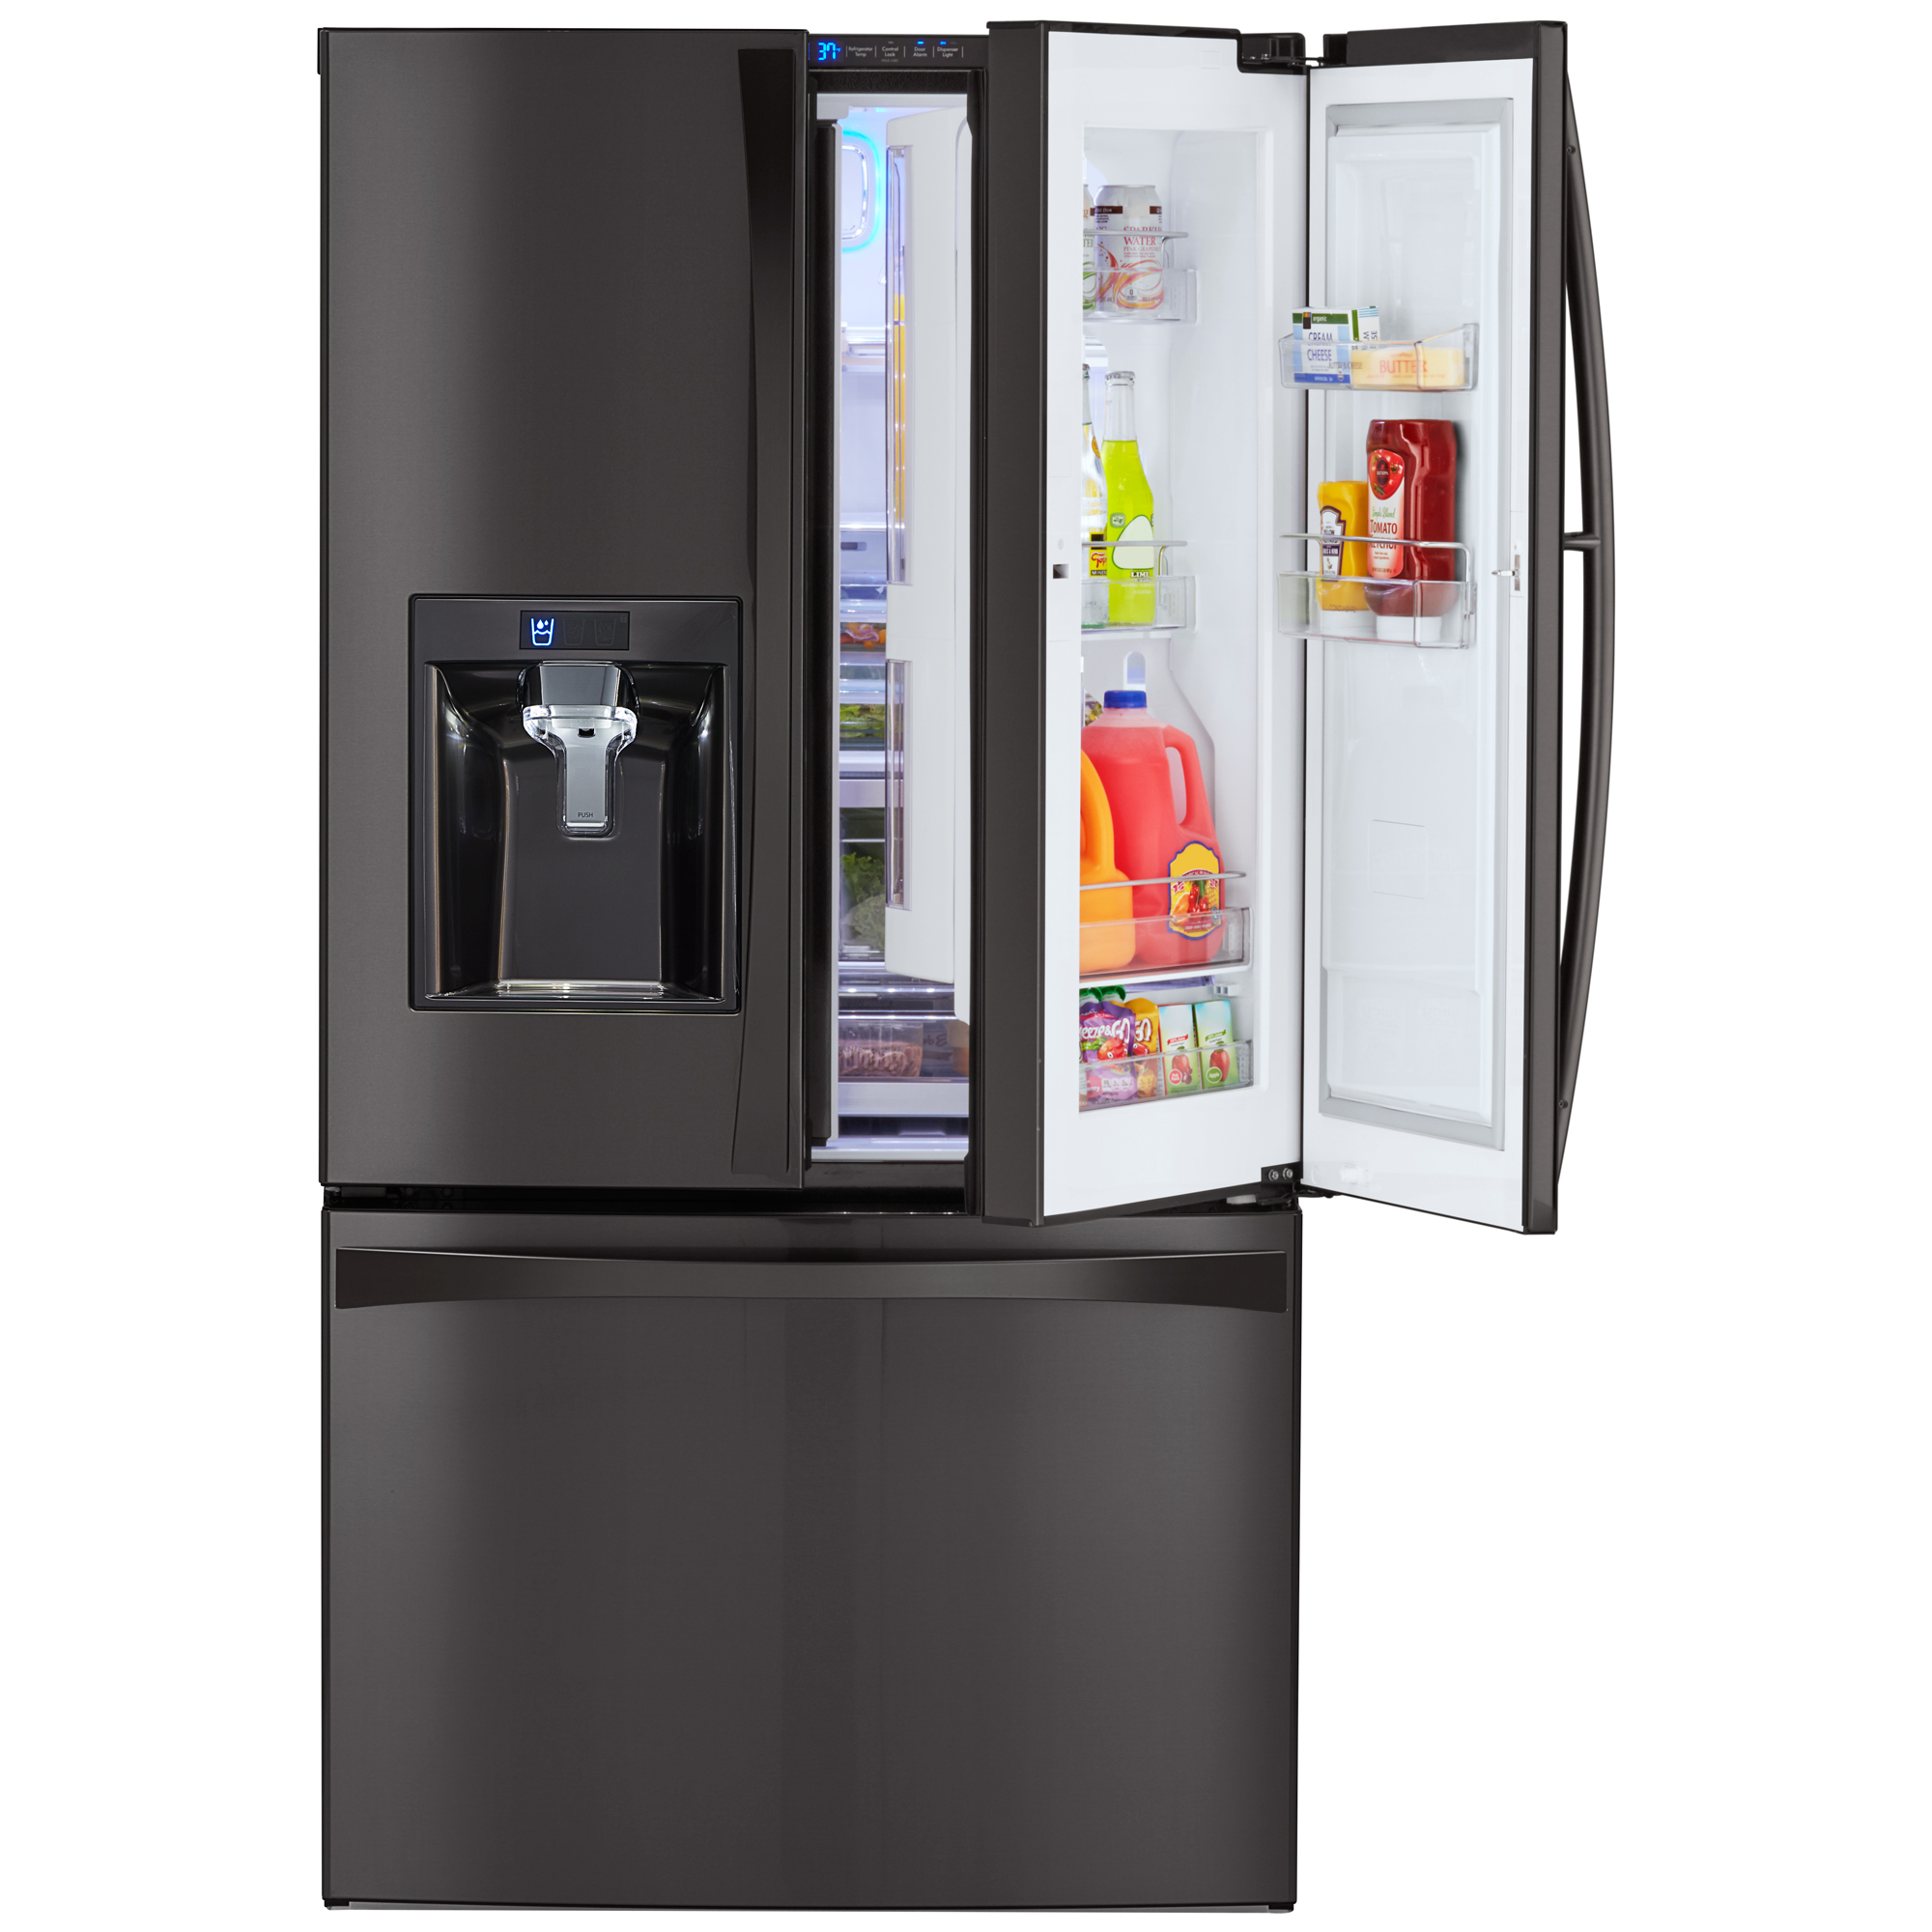 Kenmore Elite 73167 28.5 cu. ft. French Door Refrigerator – Black Kenmore Elite Stainless Steel Refrigerator